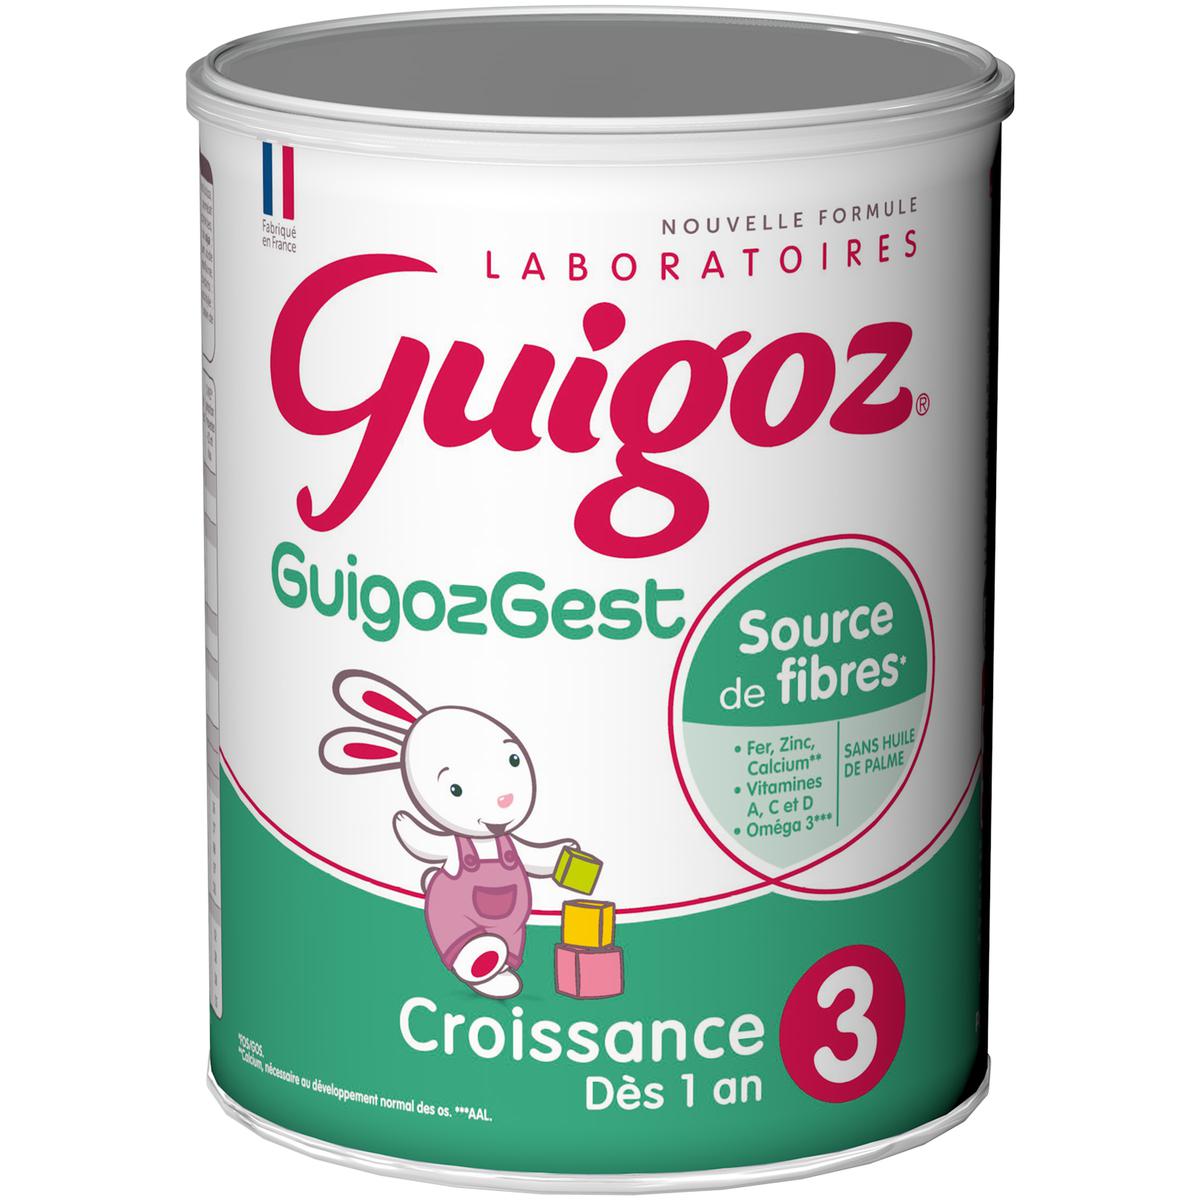 Guigoz Gest Croissance 800g